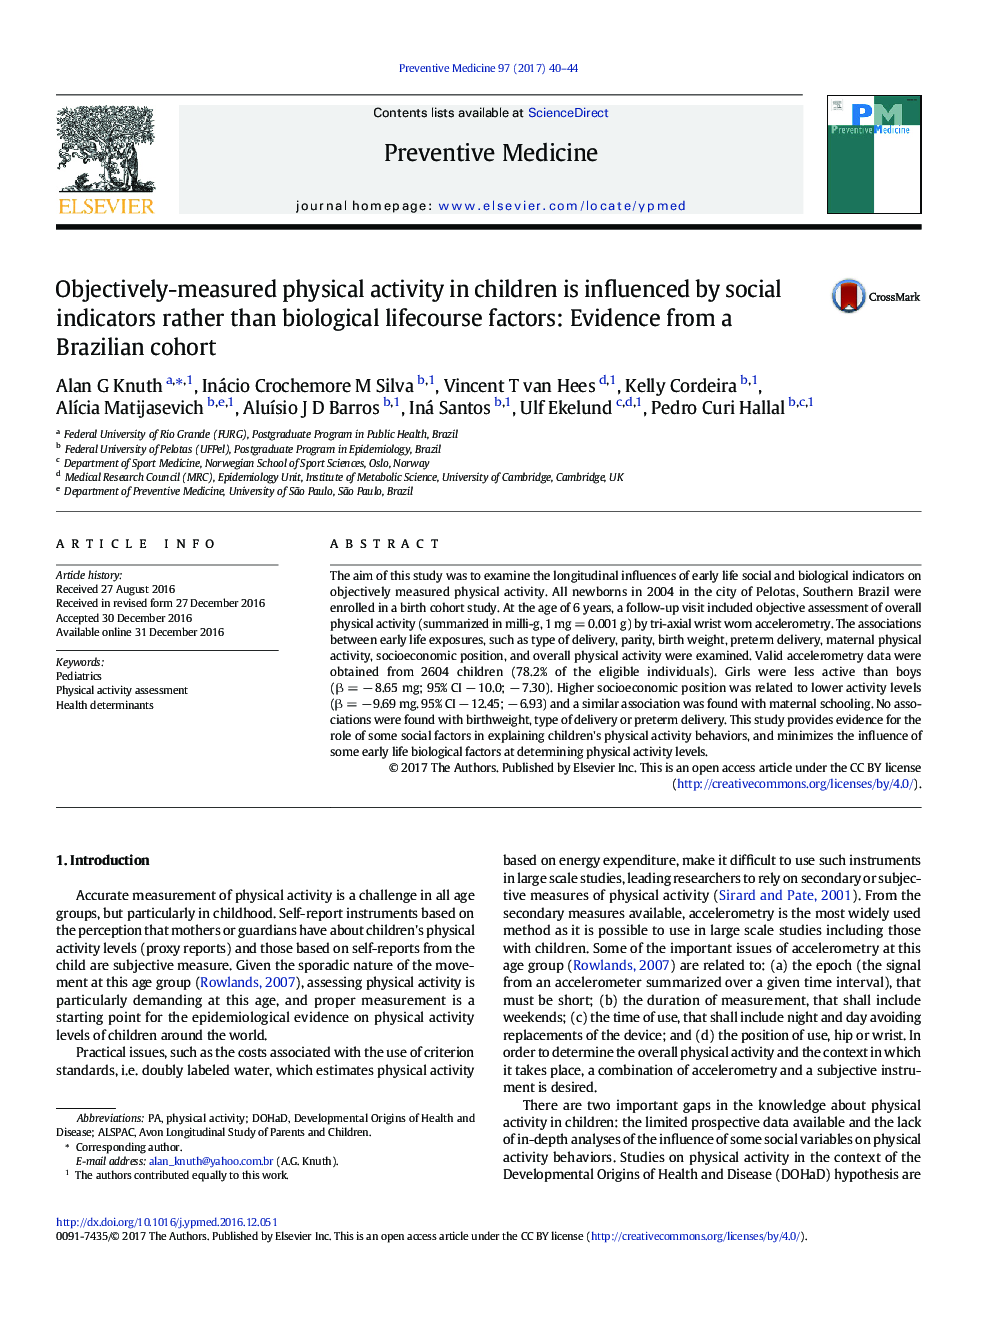 فعالیت بدنی اندازه گیری شده در مورد کودکان به وسیله شاخص های اجتماعی به جای عوامل بیولوژیکی زندگی تاثیر می گذارد: شواهد از یک گروه همسایه برزیل 